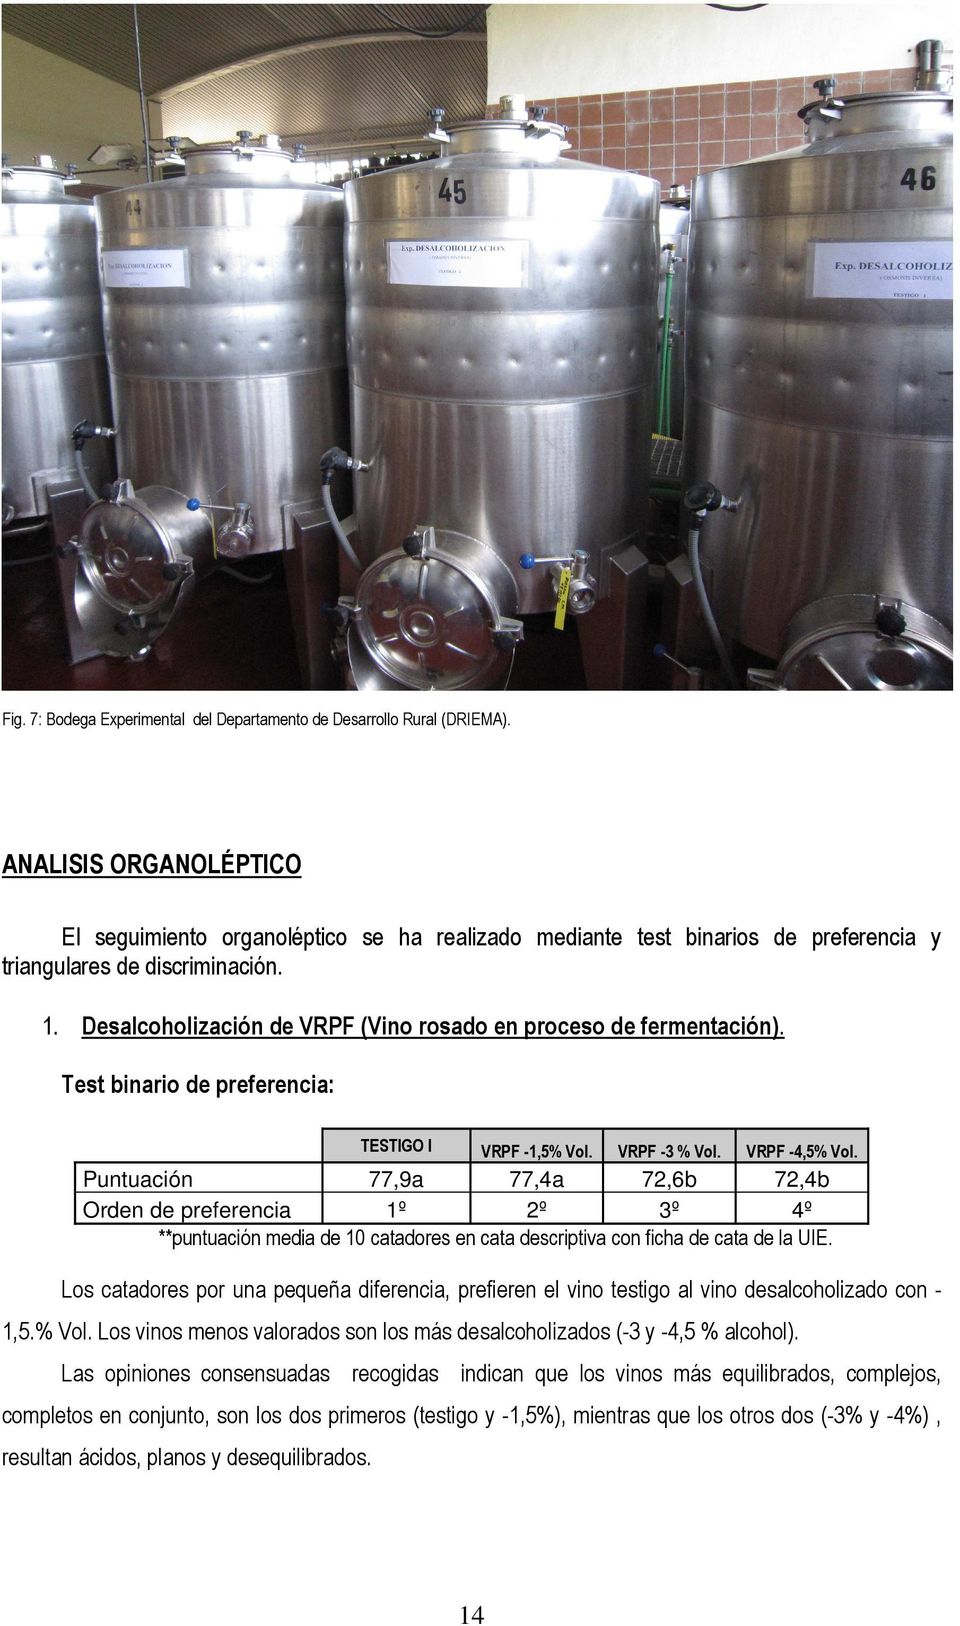 Desalcoholización de VRPF (Vino rosado en proceso de fermentación). Test binario de preferencia: TESTIGO l VRPF -1,5% Vol. VRPF -3 % Vol. VRPF -4,5% Vol.